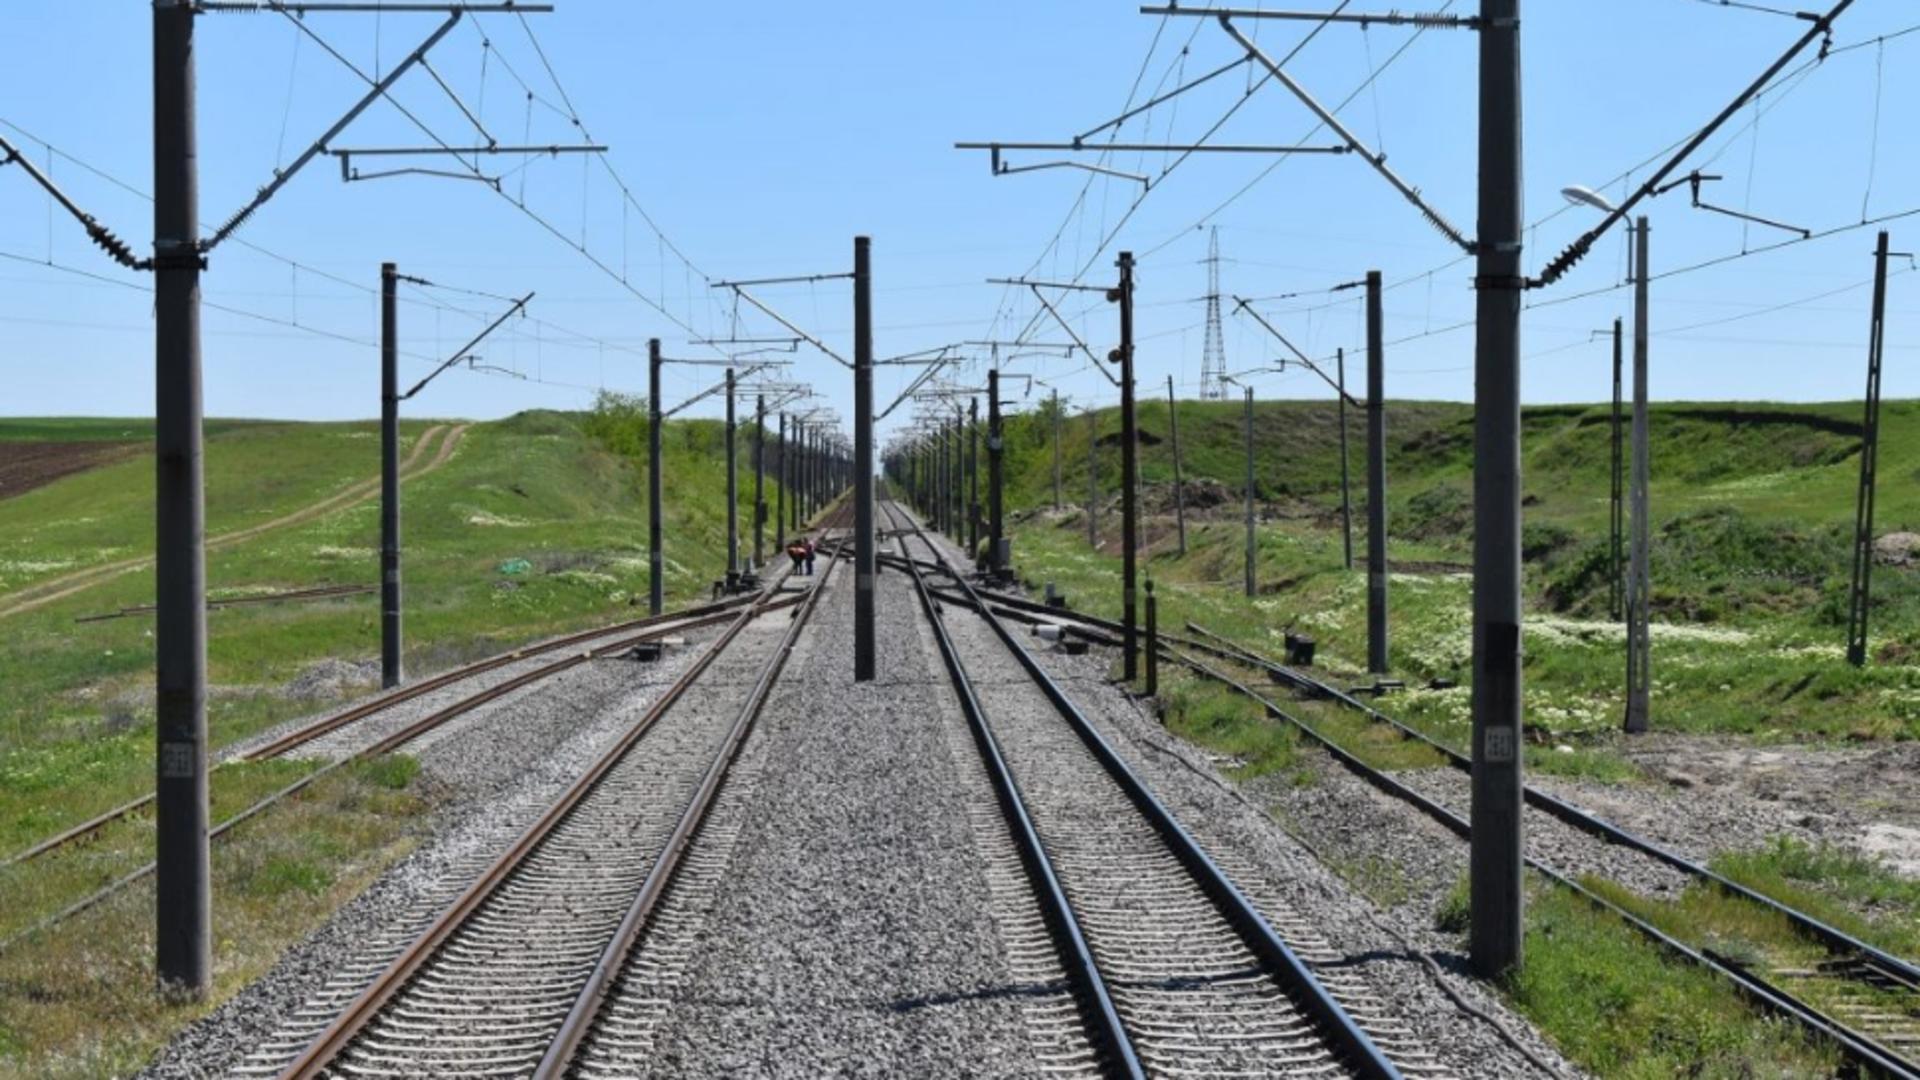 Trafic feroviar oprit temporar între Slatina Timiş şi Armeniş din cauza unui deranjament. 6 trenuri de călători staţionează în gări adiacente – Timpul estimat, uriaș